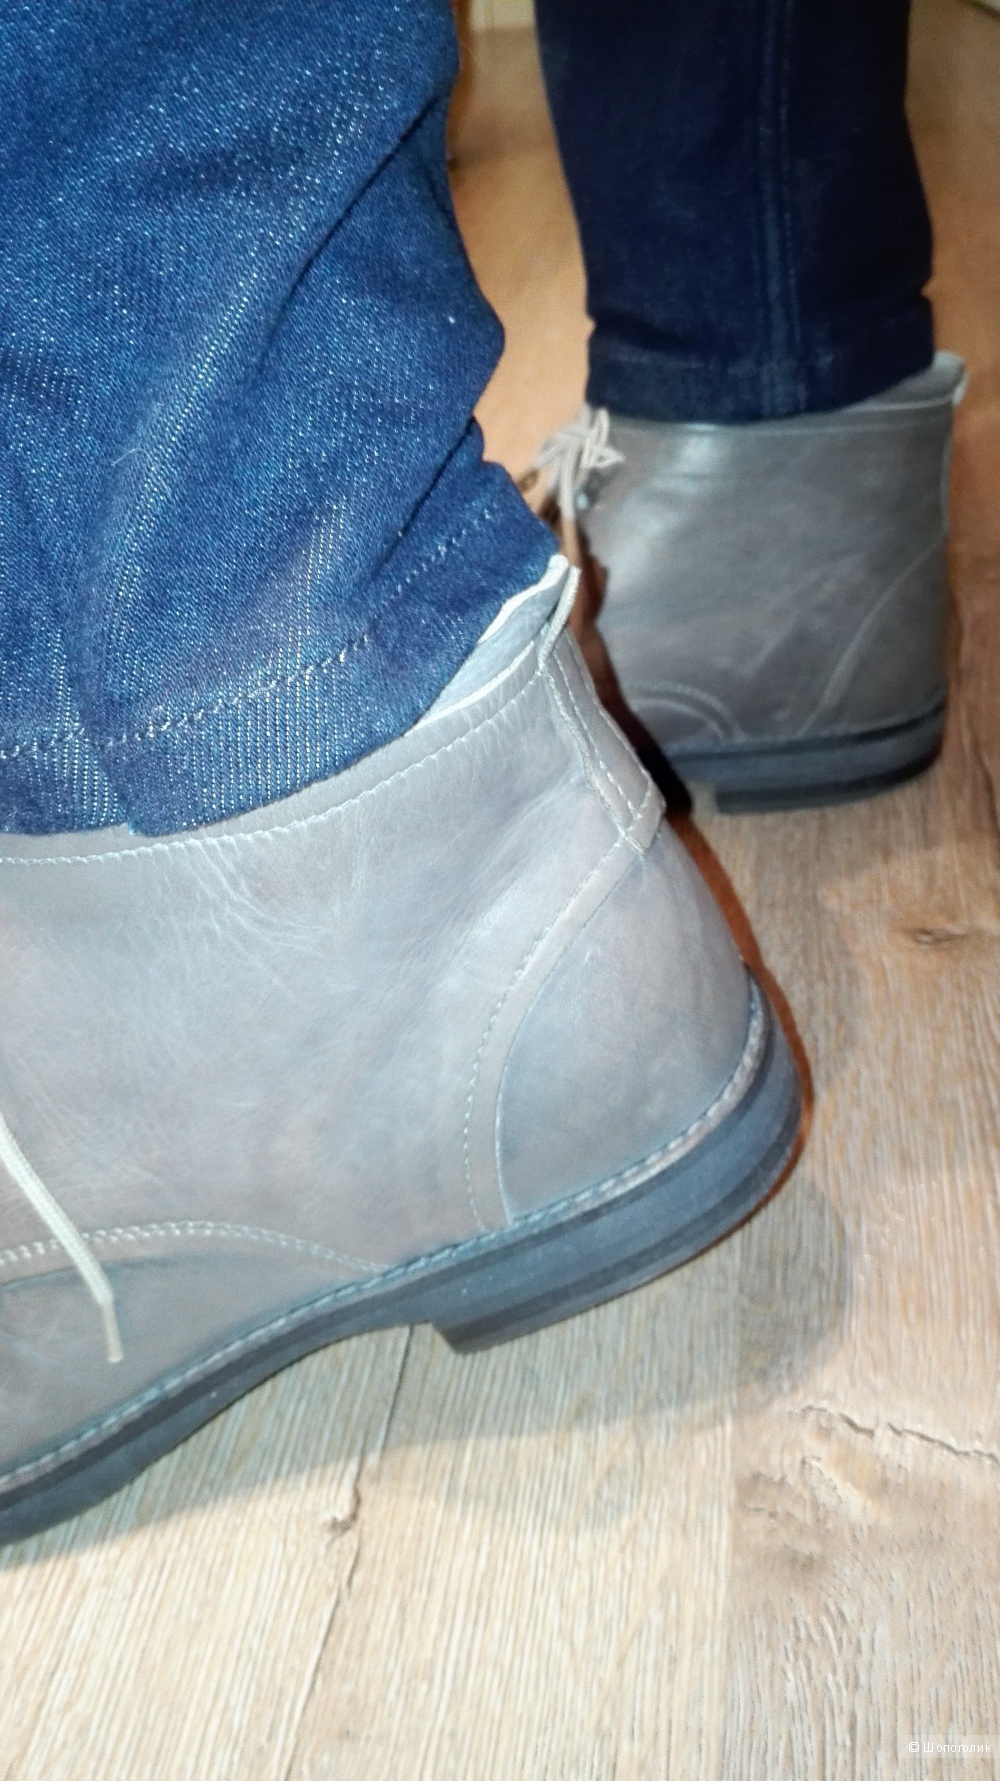 Мужские демисезонные ботинки на шнуровке дымчато-серого цвета  из телячьей кожи.Марка "HANGAR"(Made in Italy)